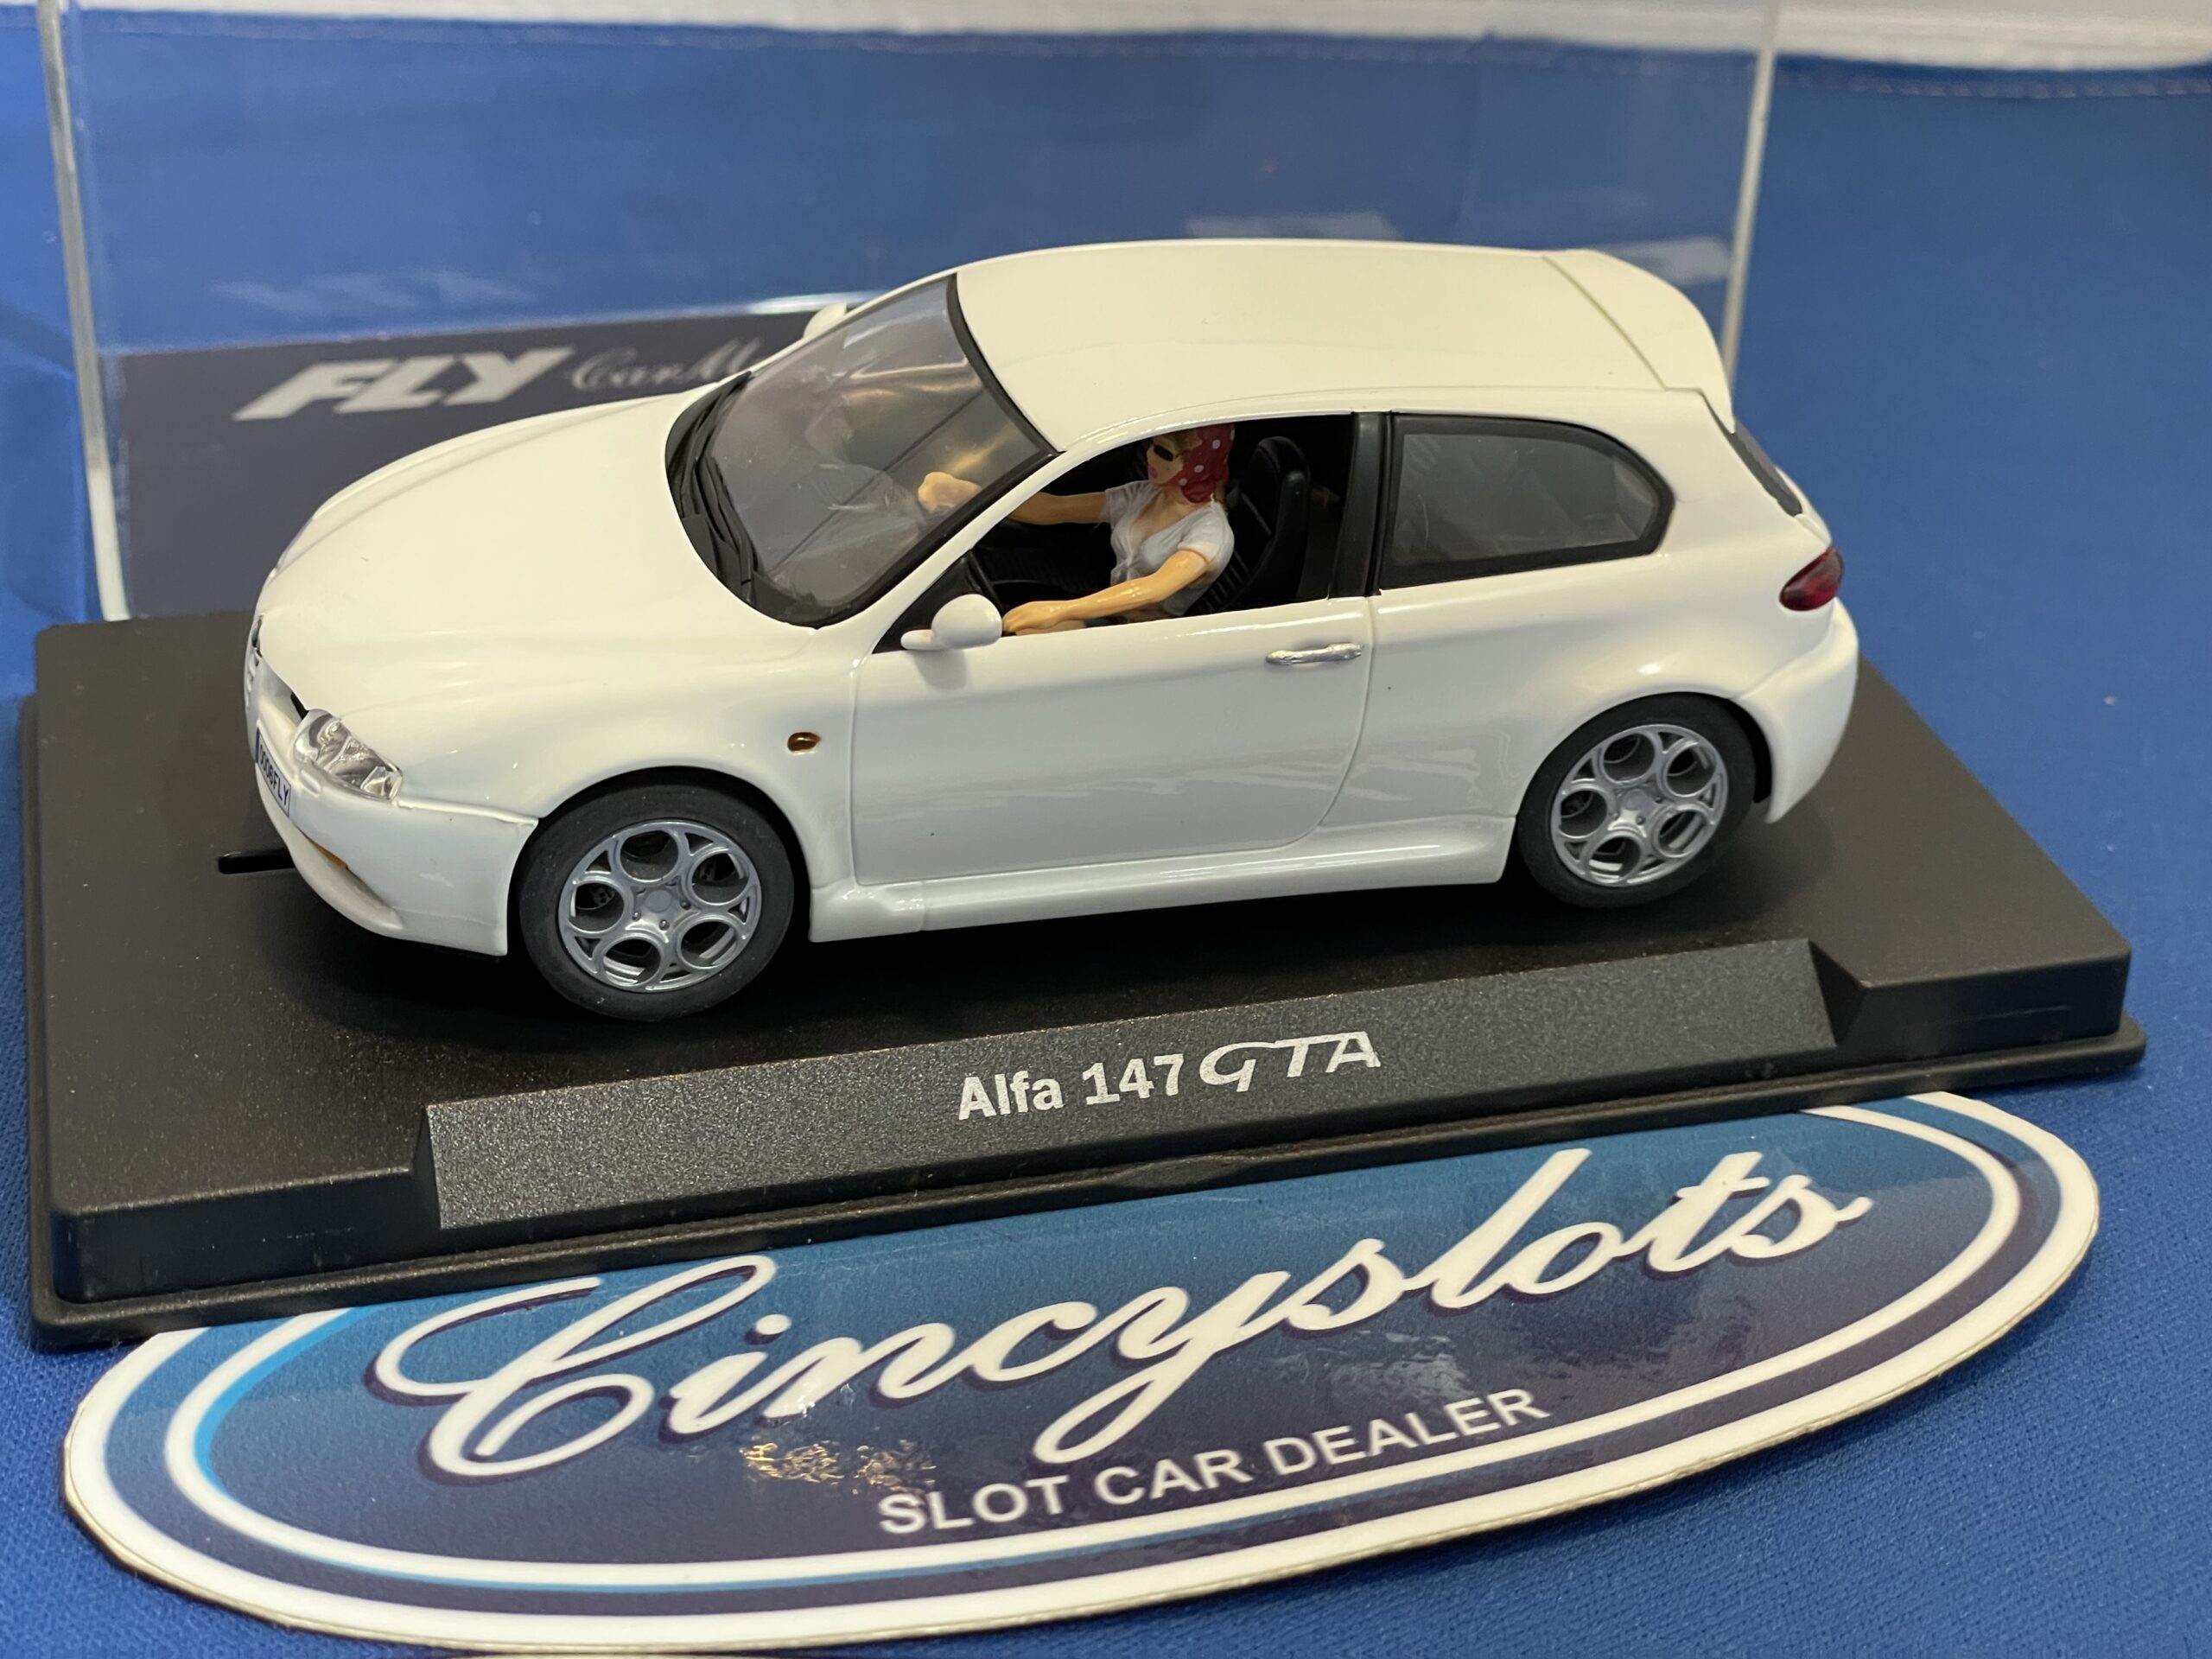 FLY A743 88105 Alfa 147 GTA, 1/32 Slot Car.